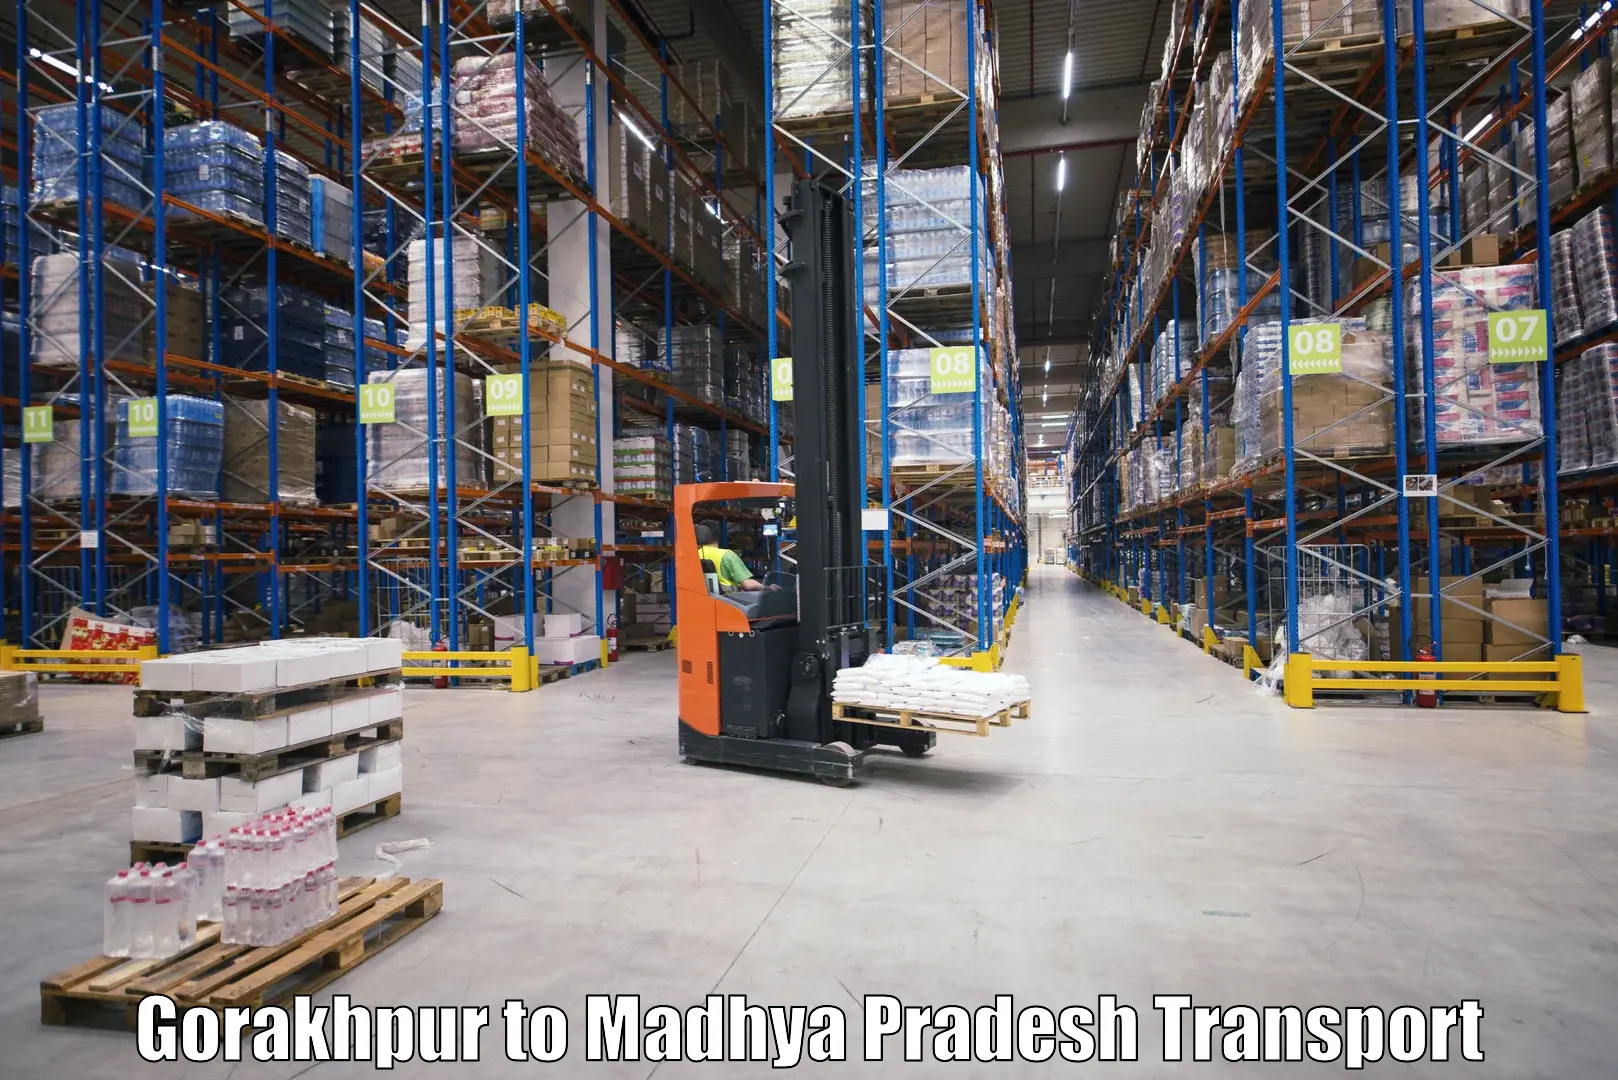 Delivery service Gorakhpur to Parasia